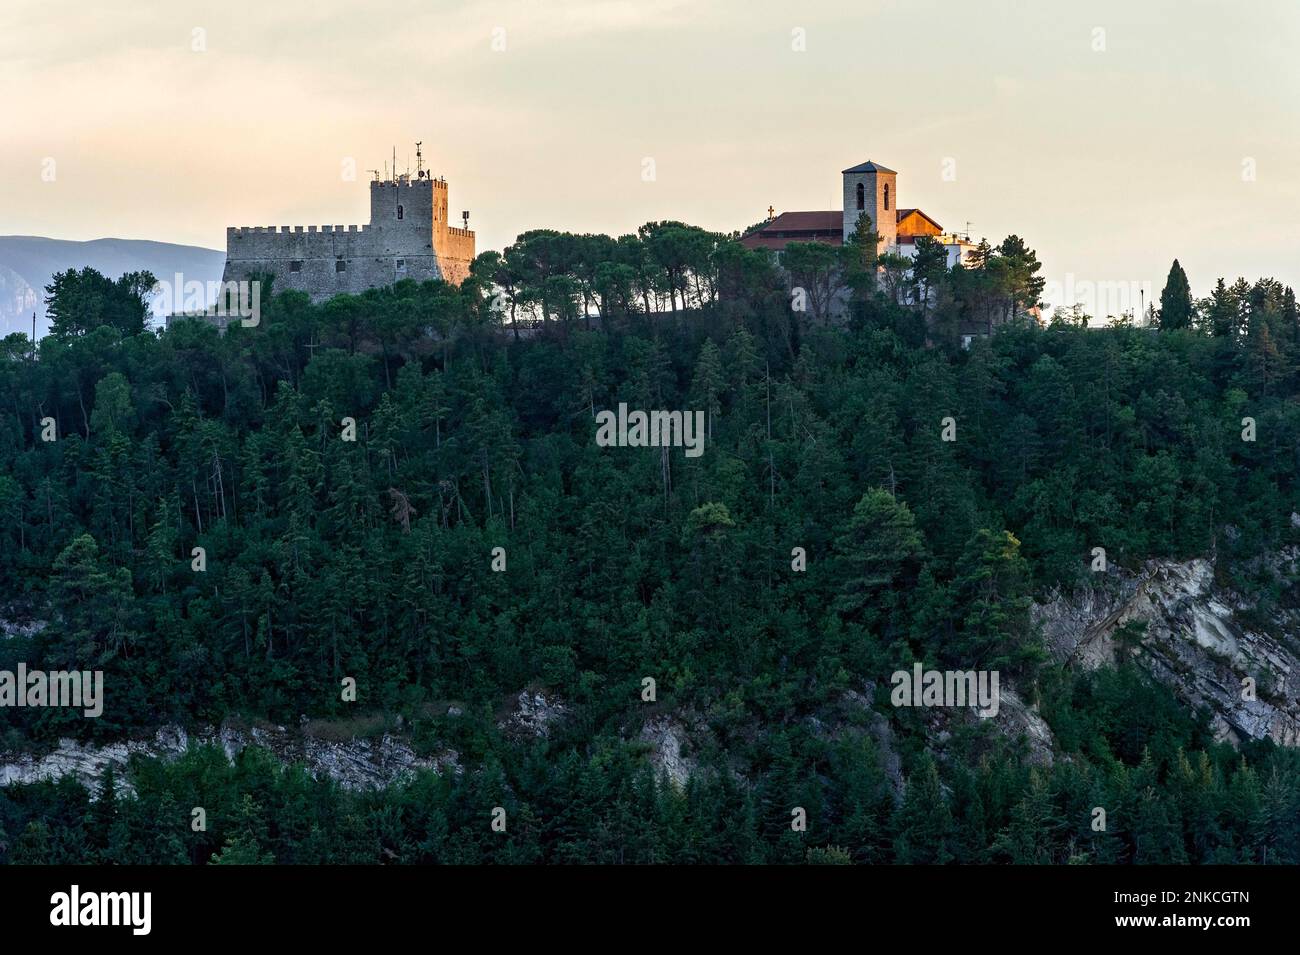 Fortress, Castle, Castello Monforte, Sanctuary of Santa Maria del Monte, Borgo Antico, Medieval Old Town, Campobasso, Molise, Italy Stock Photo